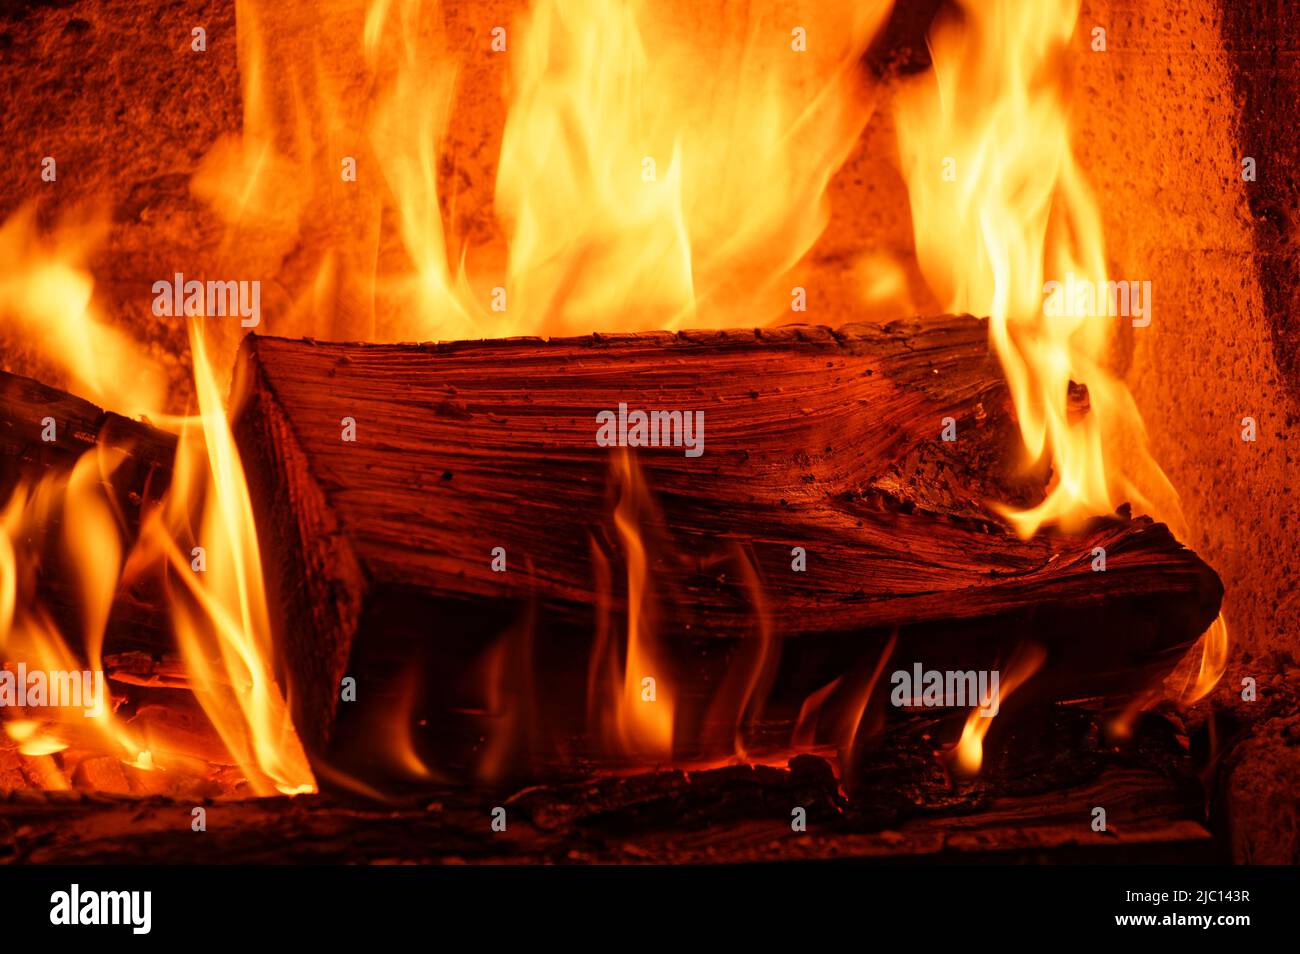 El calor invernal se genera a partir de la quema de madera en una chimenea abierta. Foto de stock